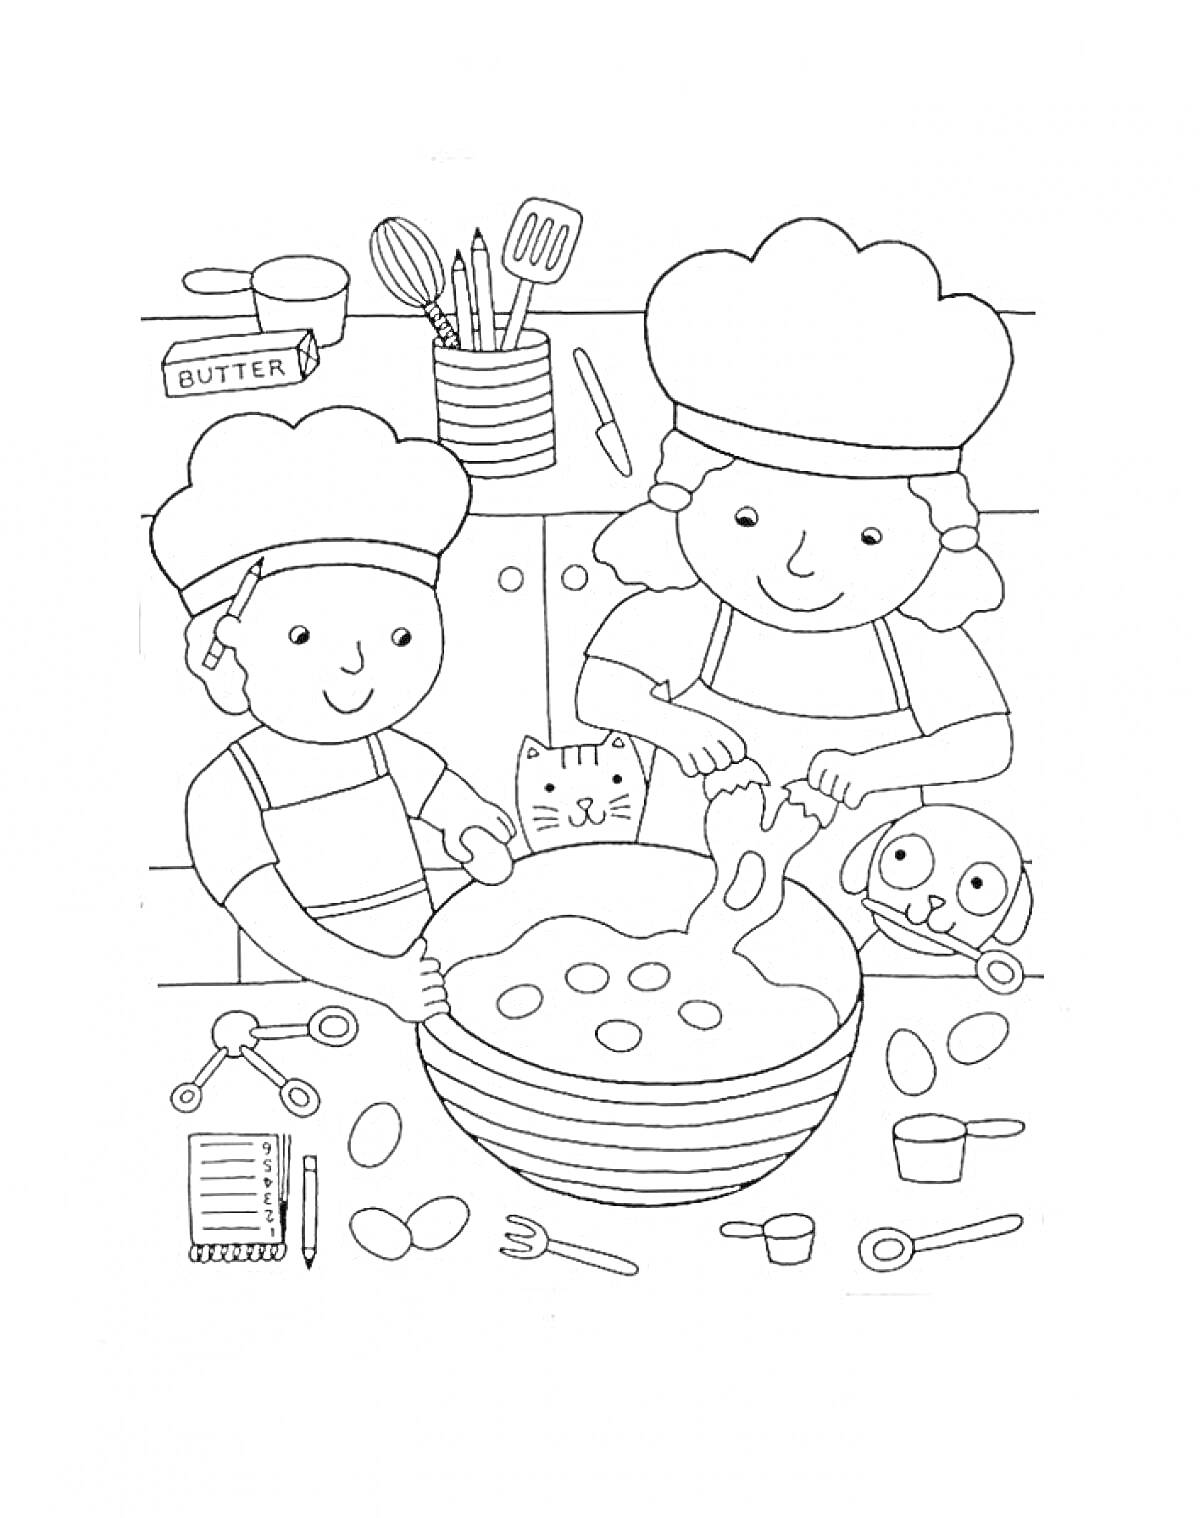 Раскраска Дети-повара готовят на кухне. Две фигуры детей в поварских колпаках смешивают ингредиенты в большой миске, вокруг них лежат яйца, ложки, вилки, весы, блокнот, кошка, собака, на заднем фоне стол с кухонными принадлежностями и пачка масла.